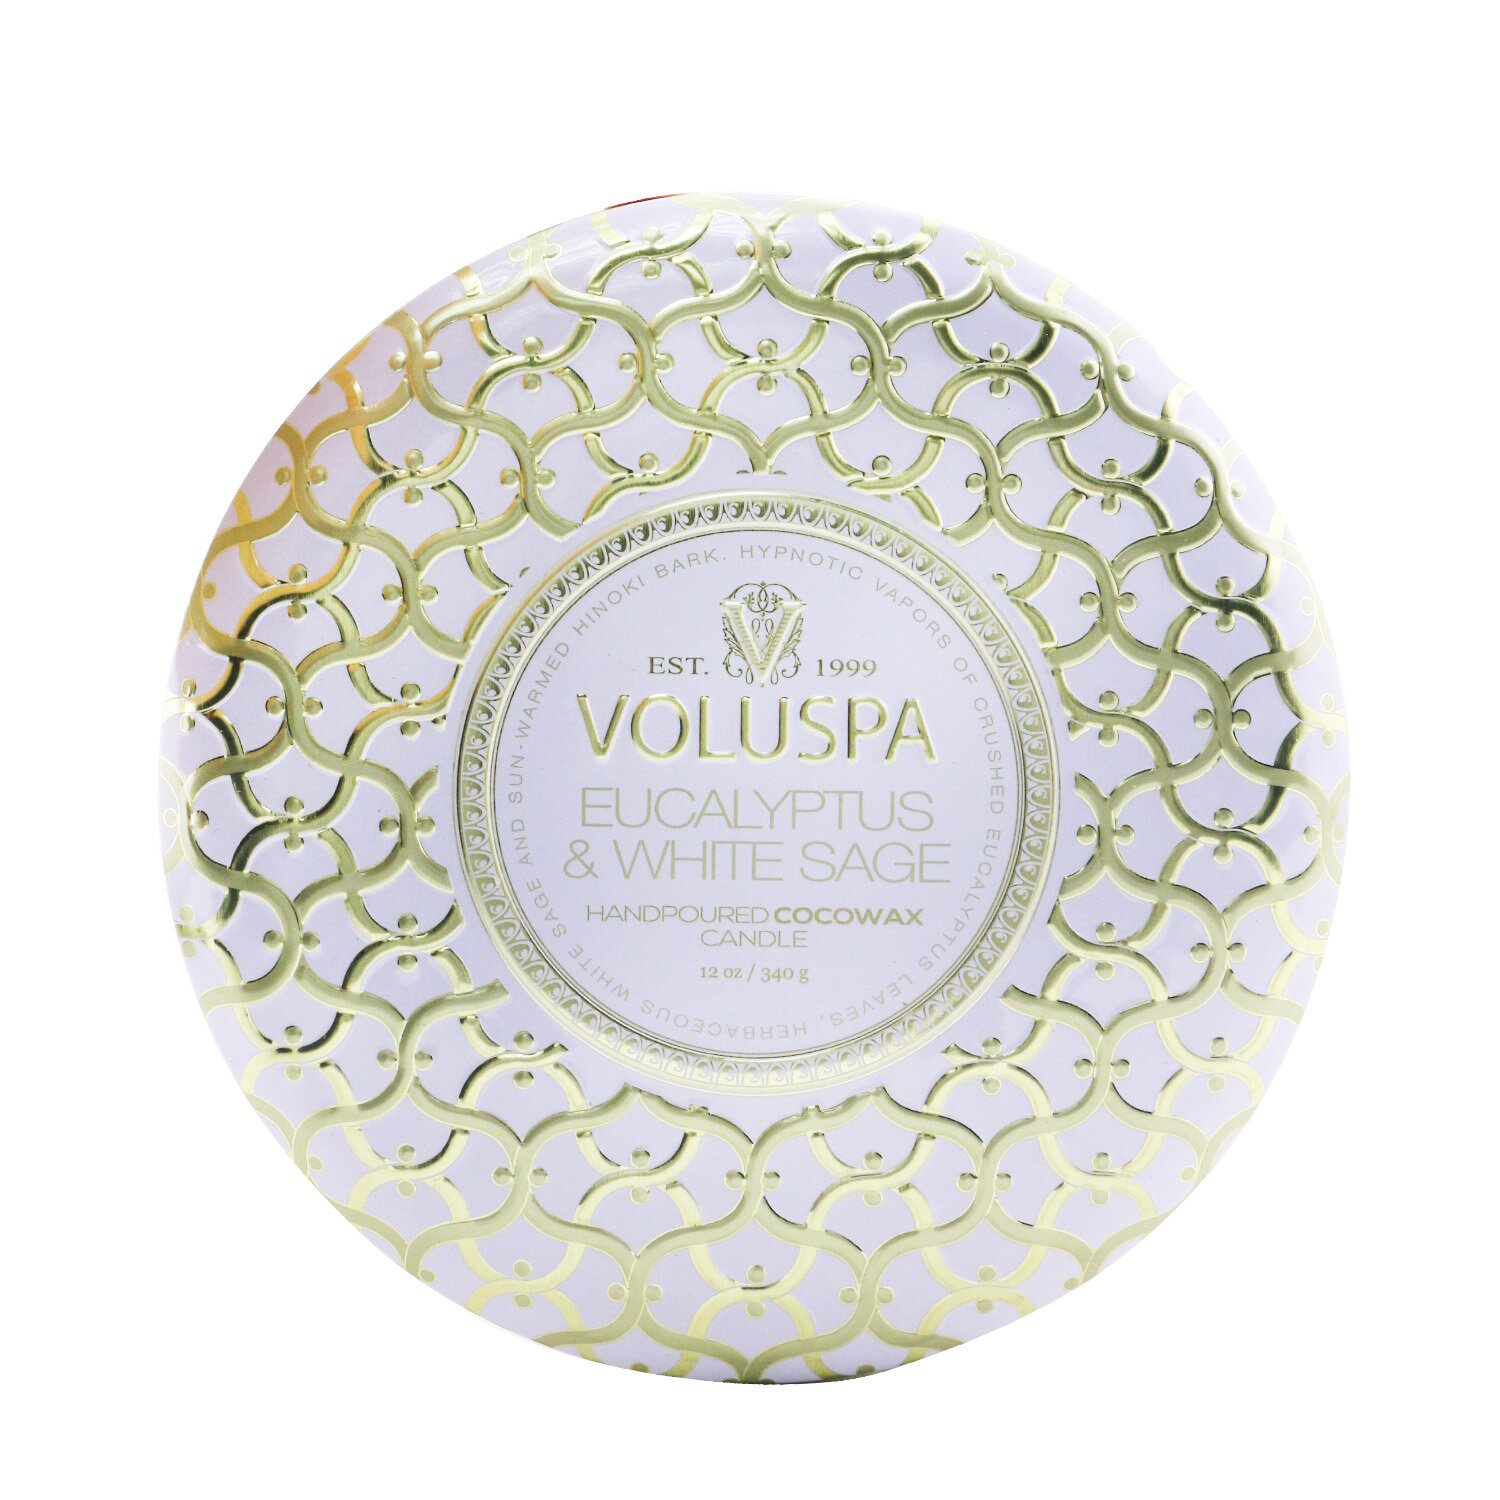 Voluspa - 3 Wick Decorative Tin 芳香蠟燭 - Eucalyptus & White Sage